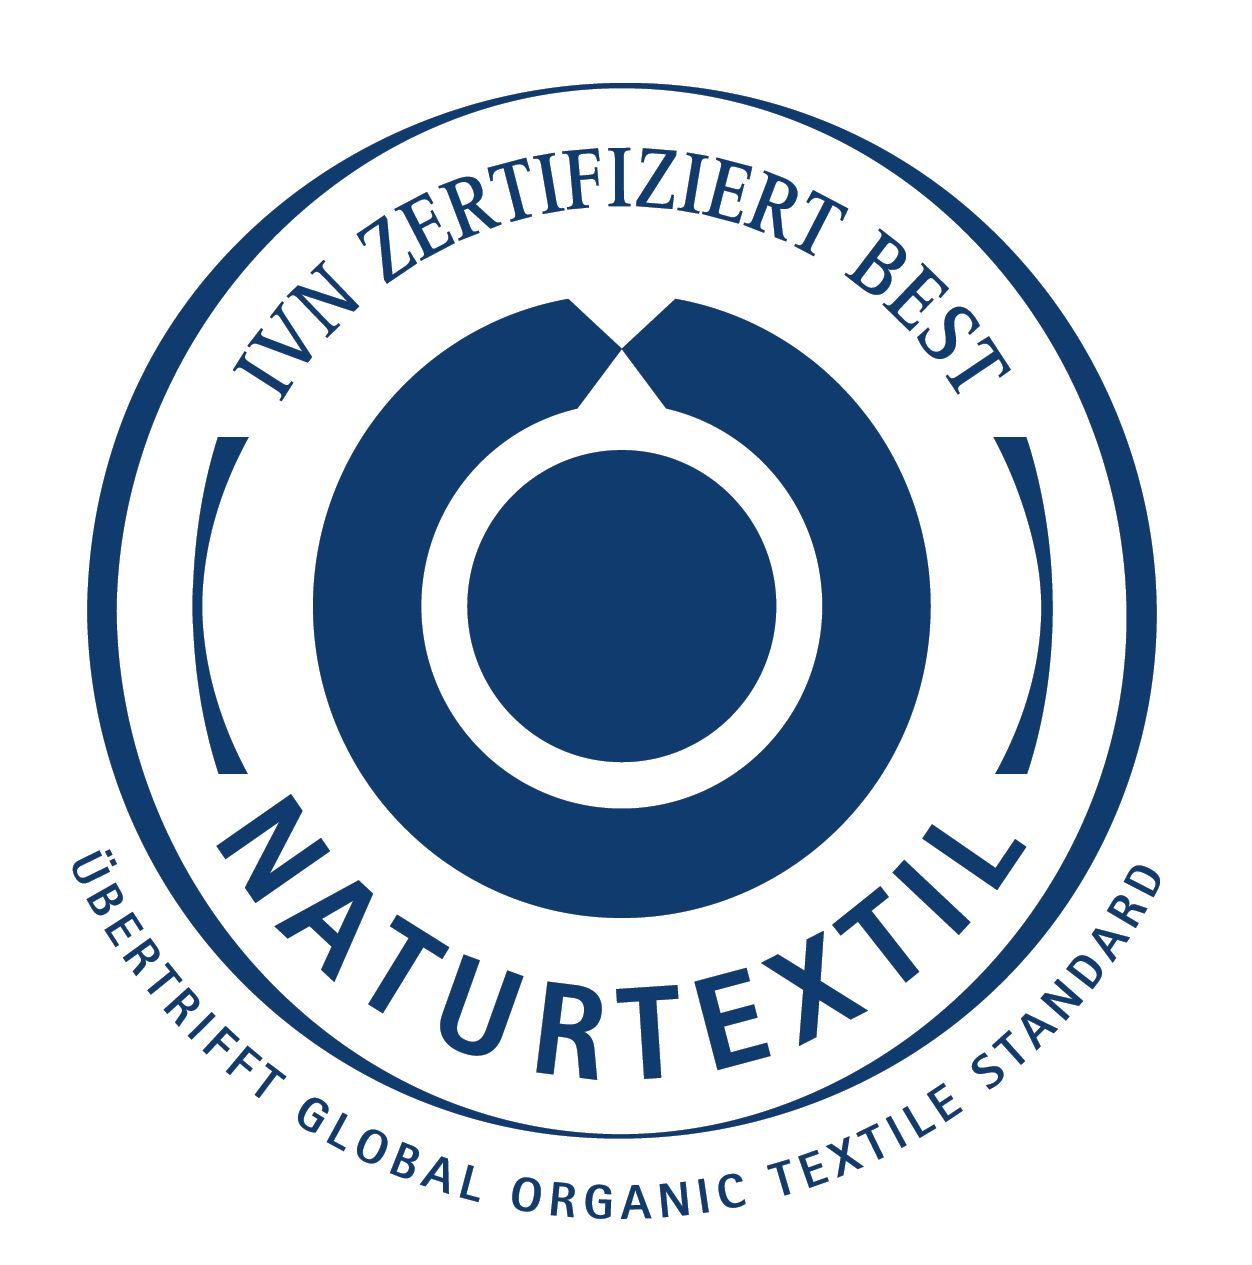 Der Internationale Verband der Naturtextilwirtschaft vergibt das Siegel Naturtextil IVN zertifiziert BEST. So sind die Textilien aus 100 Prozent zertifiziert ökologischen Naturfasern, zudem gibt es Mindestlöhne und ein Verbot von Kinderarbeit.